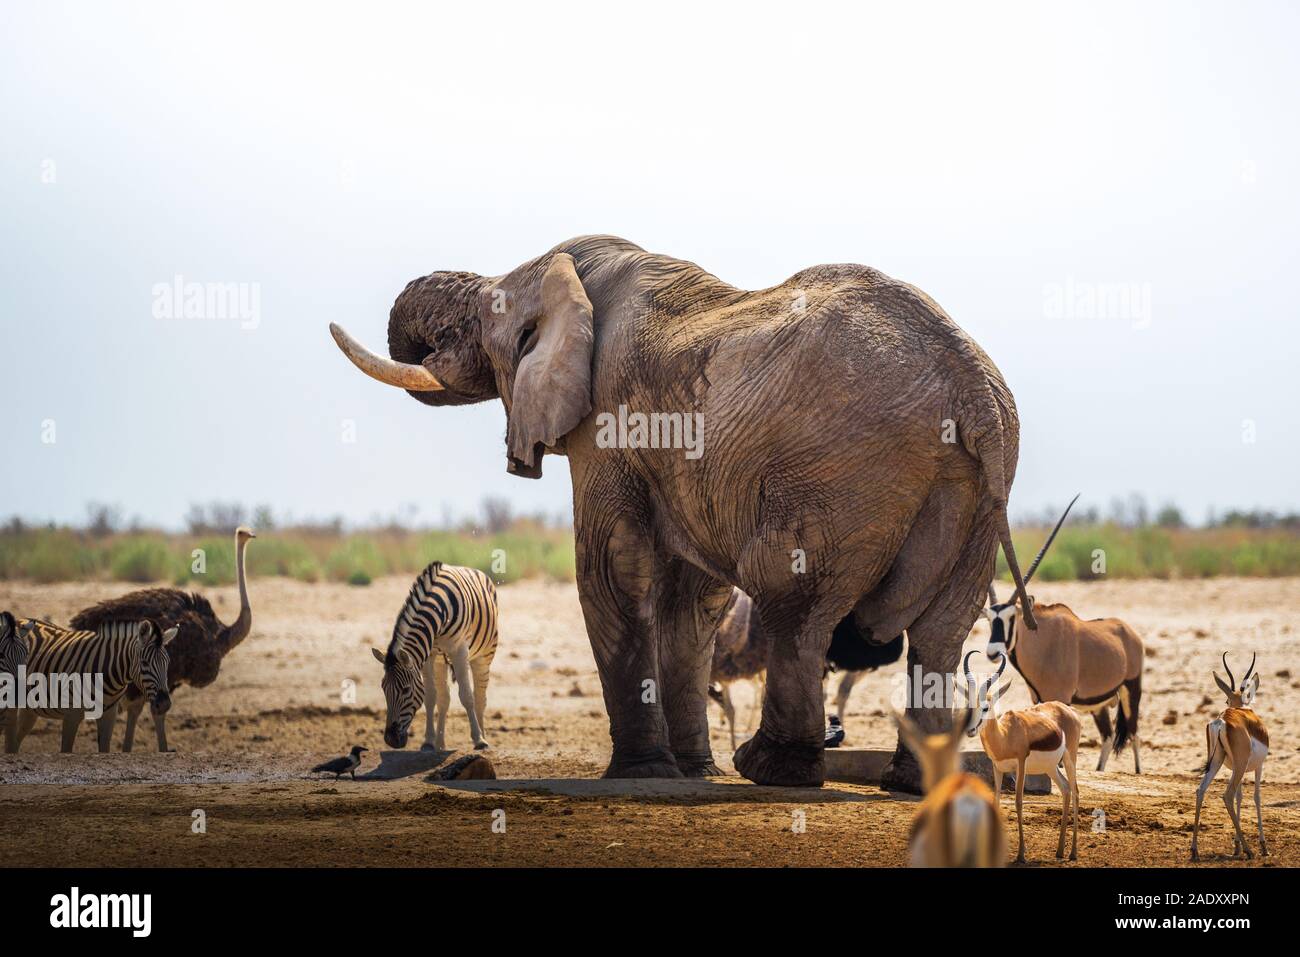 Boissons de l'éléphant d'eau à un étang dans le parc national d'Etosha, Namibie, entouré par d'autres animaux. Etosha est connu pour ses points d'overfil Banque D'Images